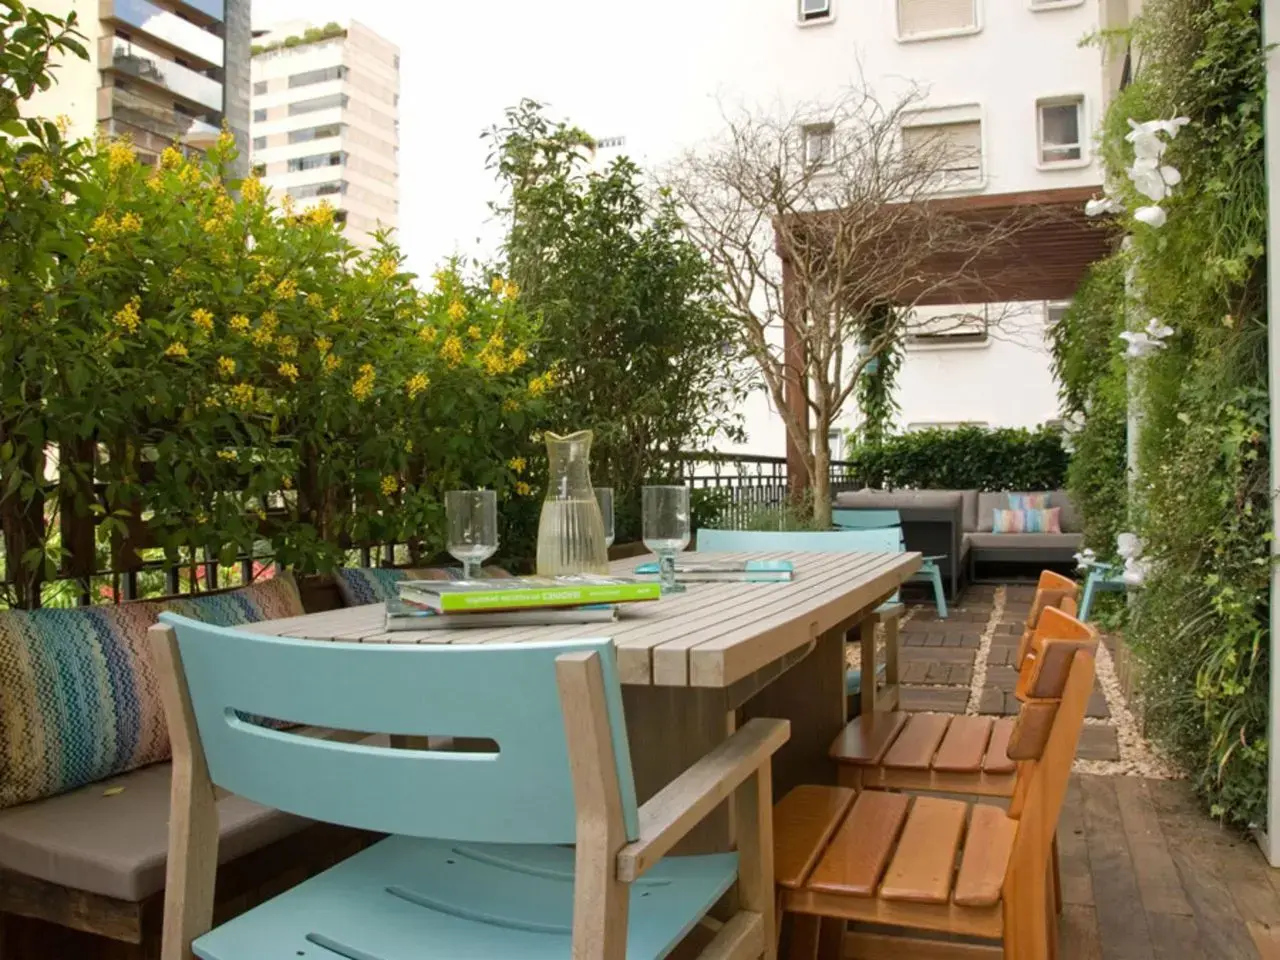 Confort térmico: balcón con árboles es una gran opción